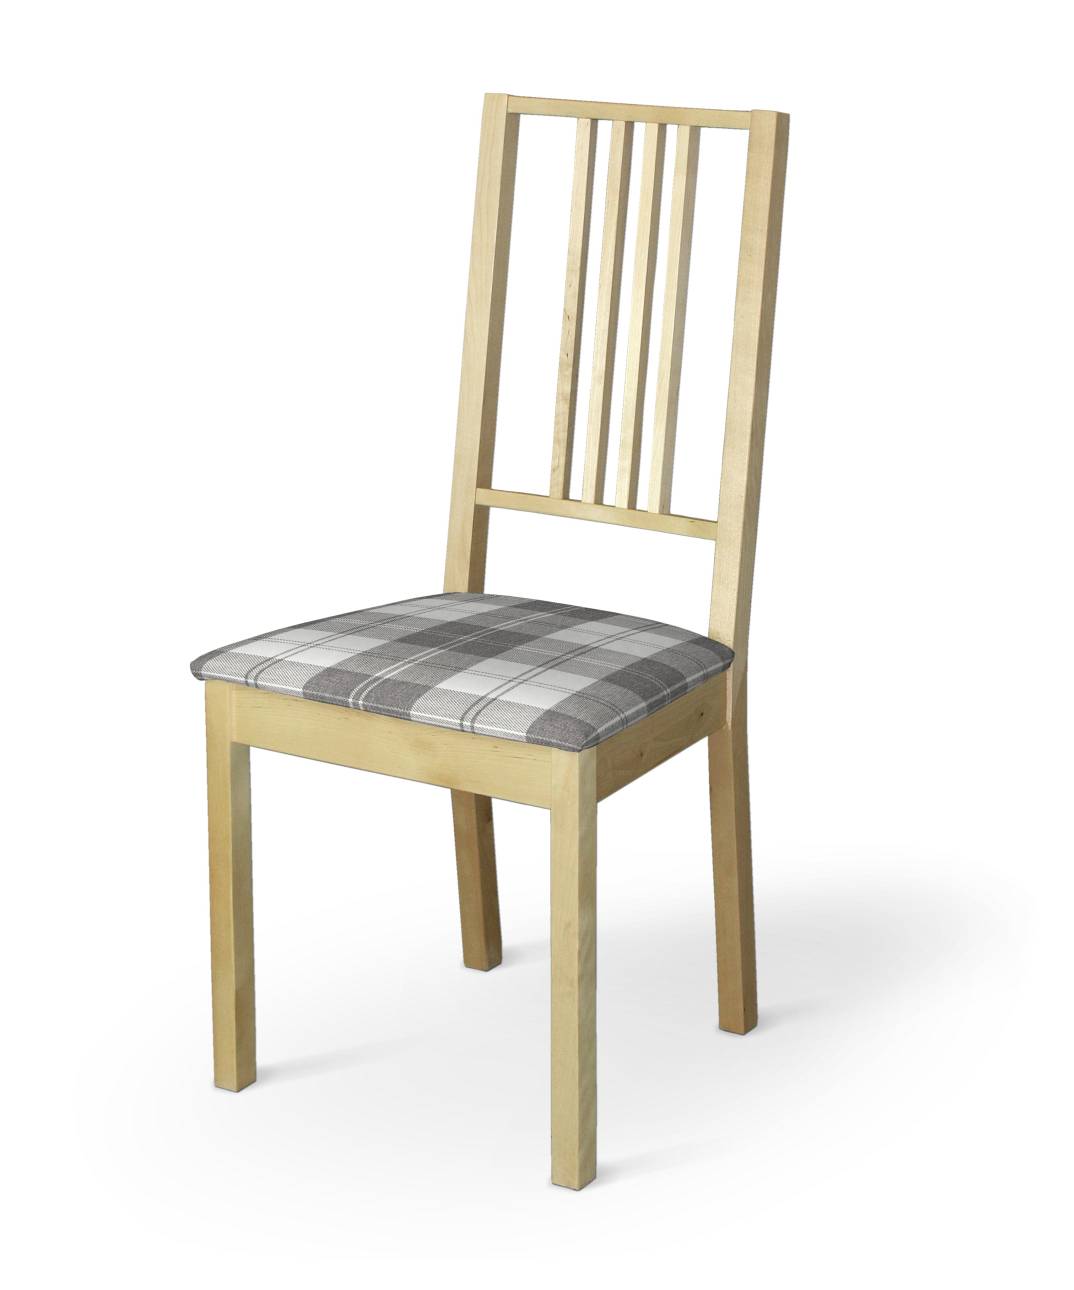 Dekoria Potah na sedák židle Börje, šedo - bílá kostka , potah sedák židle Börje, Edinburgh, 115-79